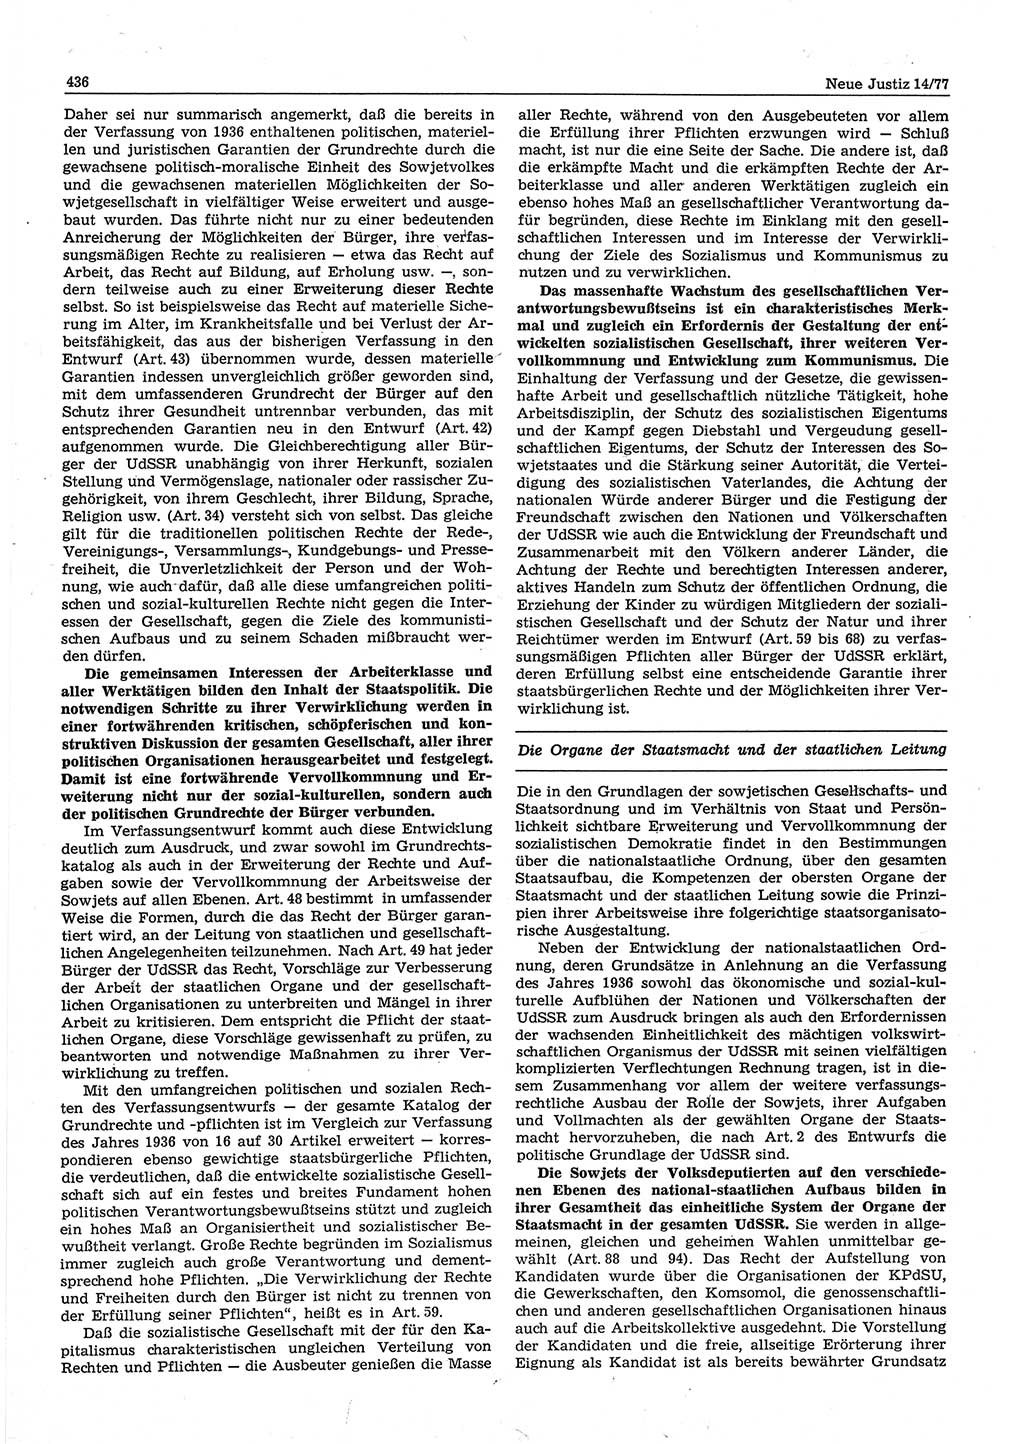 Neue Justiz (NJ), Zeitschrift für Recht und Rechtswissenschaft-Zeitschrift, sozialistisches Recht und Gesetzlichkeit, 31. Jahrgang 1977, Seite 436 (NJ DDR 1977, S. 436)